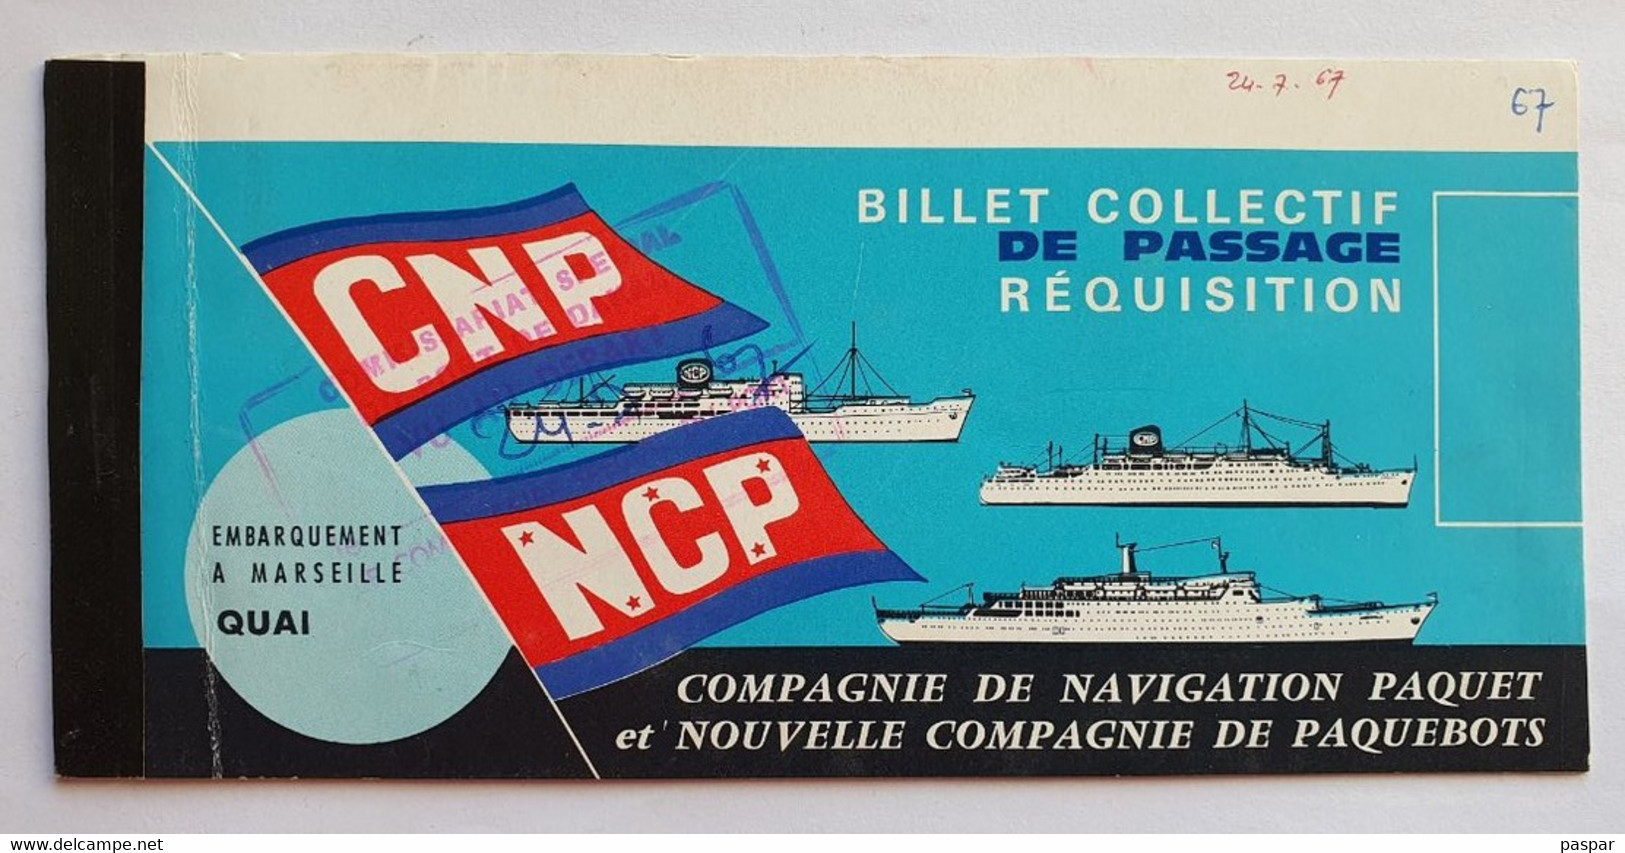 COMPAGNIE DE NAVIGATION PAQUET - Billet De Passage Réquisition DAKAR MARSEILLE - Ancerville - 1967 - World